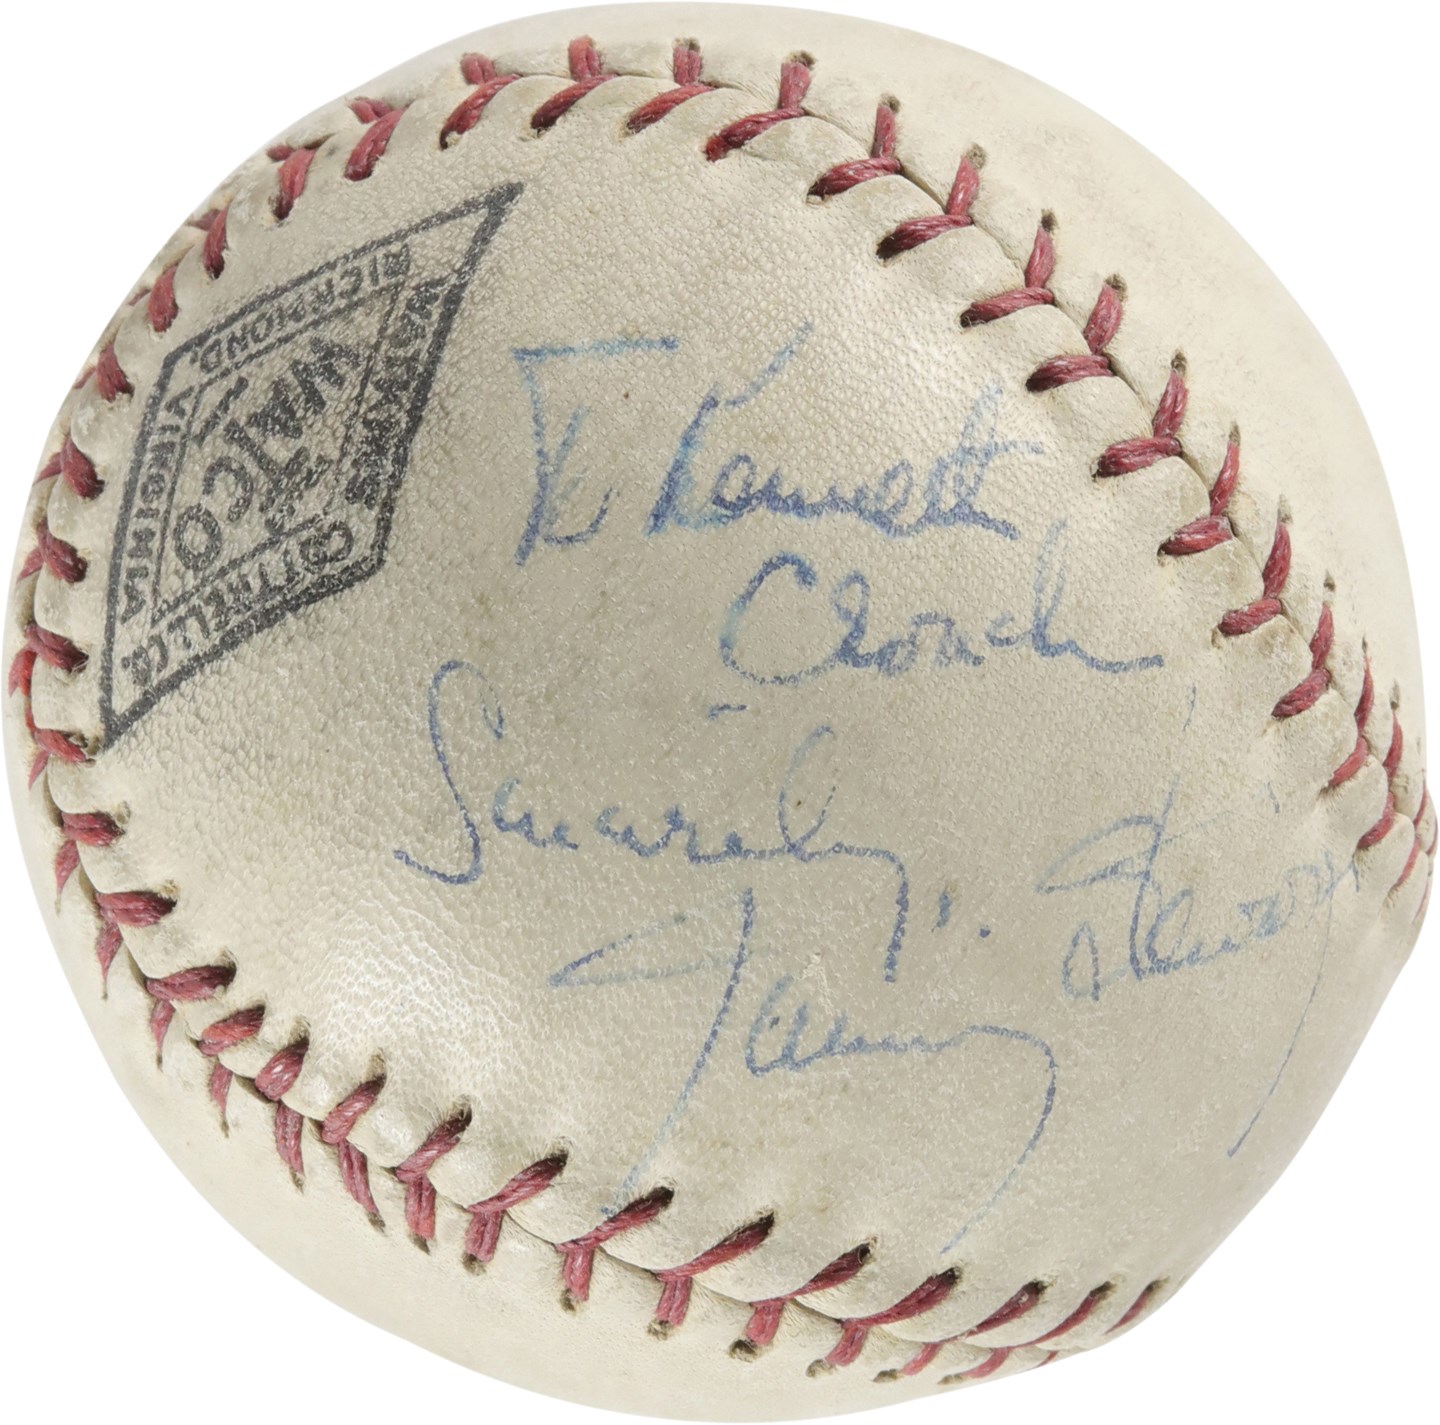 - 1949 Jimmy Stewart & Monty Stratton "The Stratton Story" Dual-Signed Baseball (PSA)